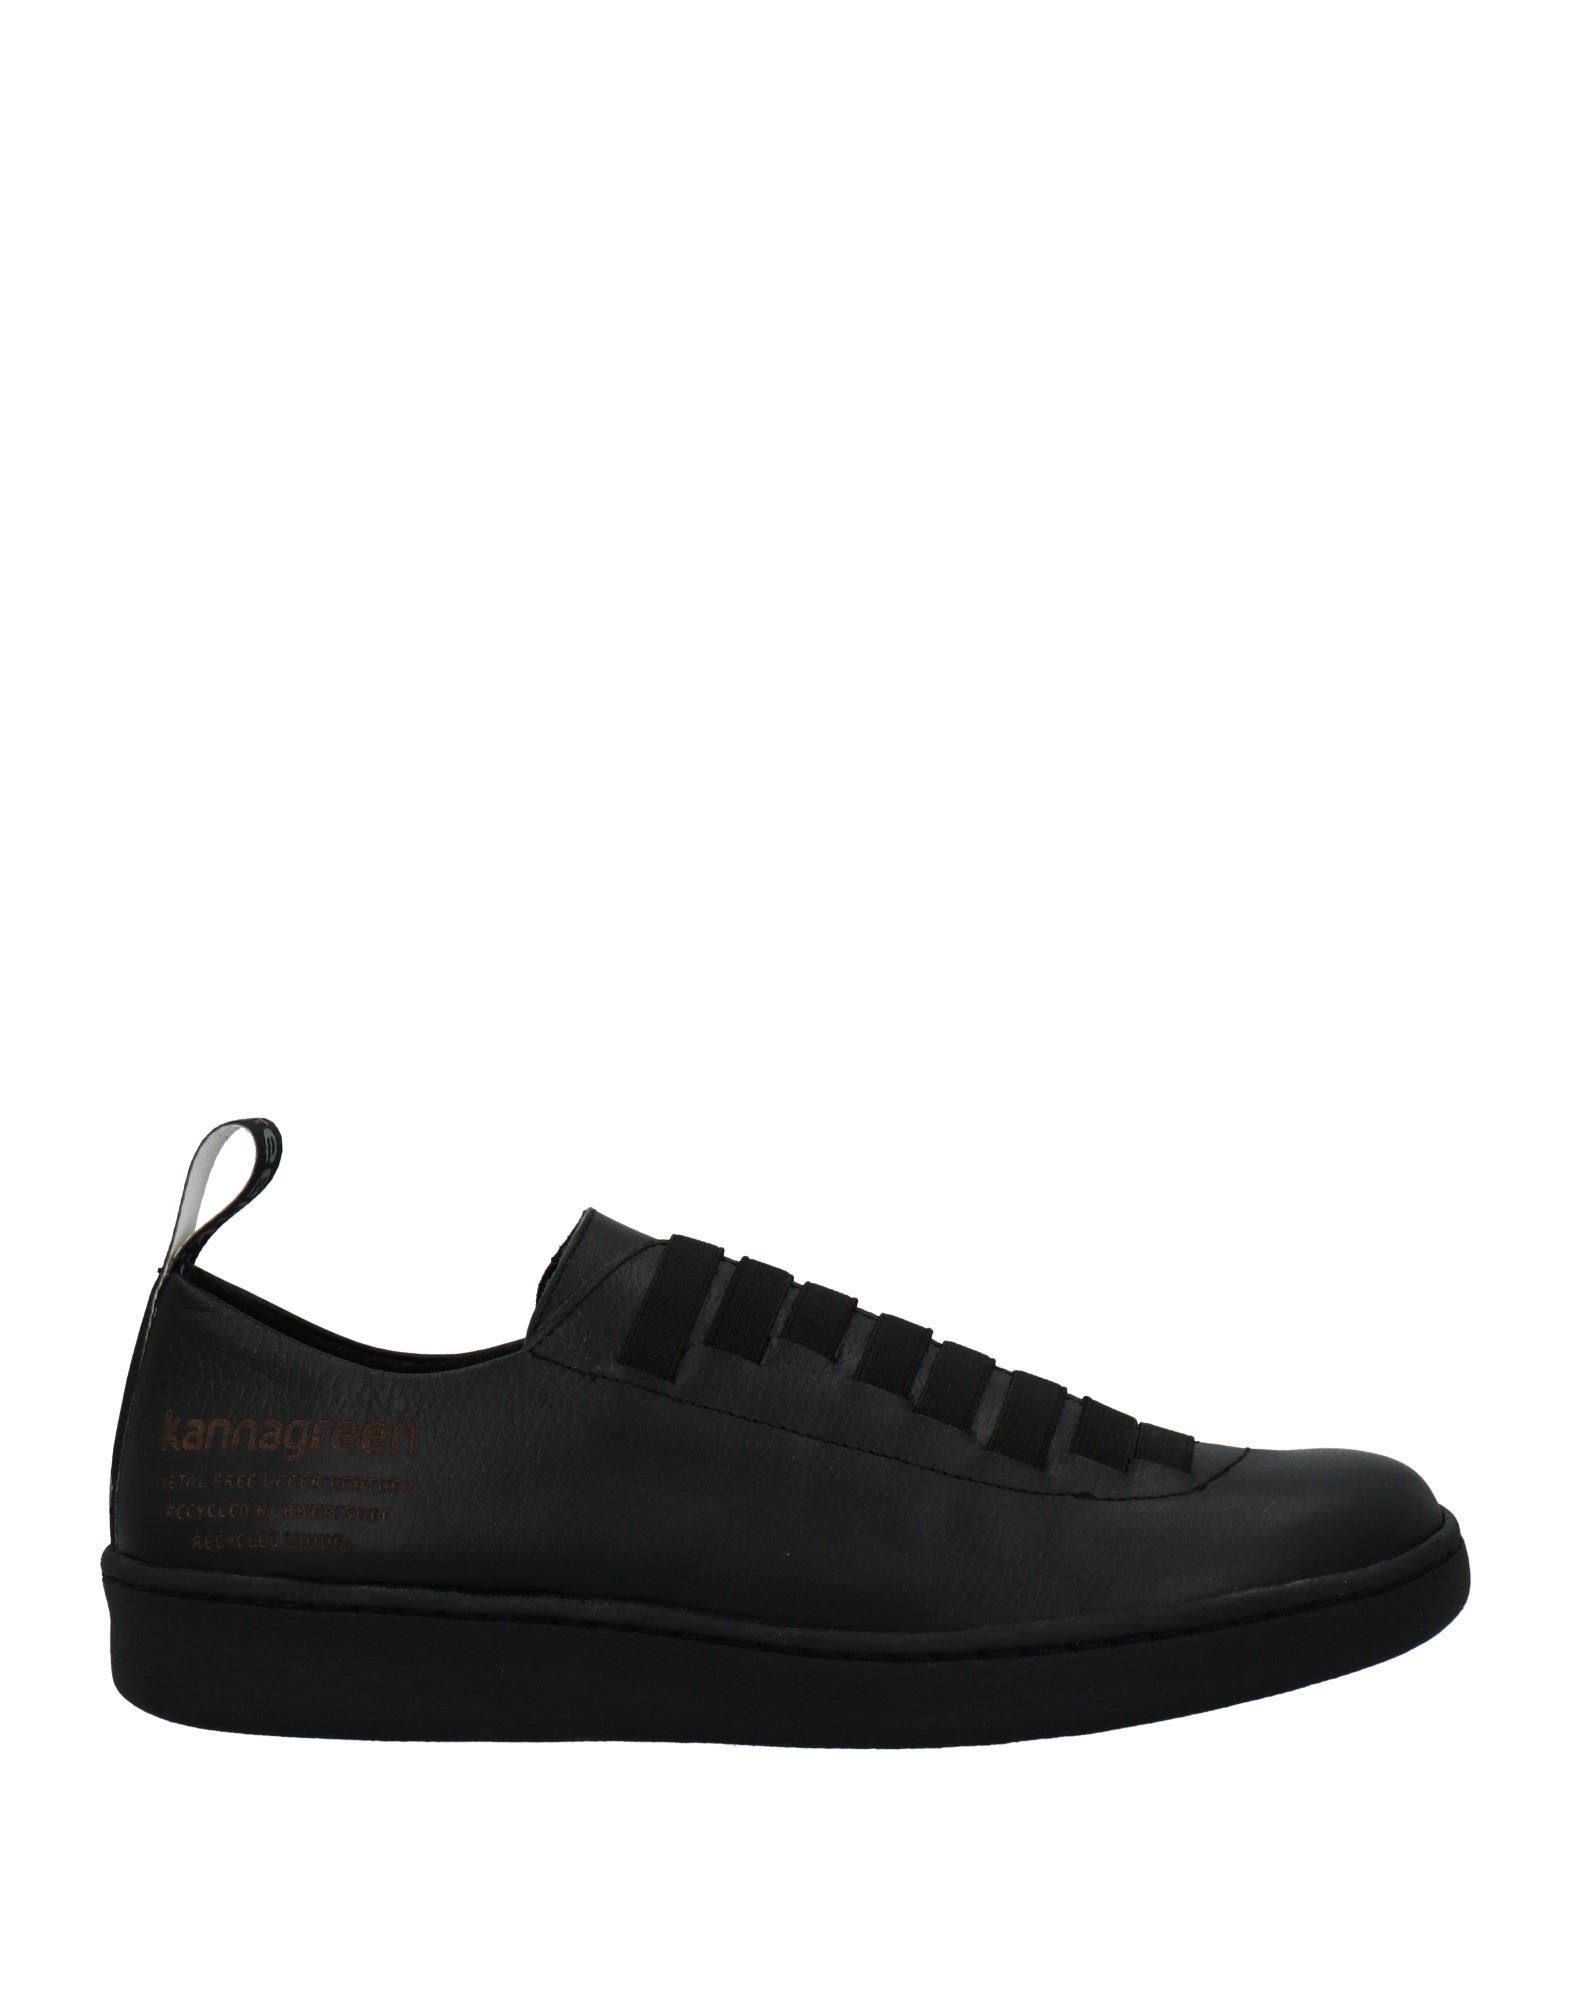 Kanna Sneakers In Black